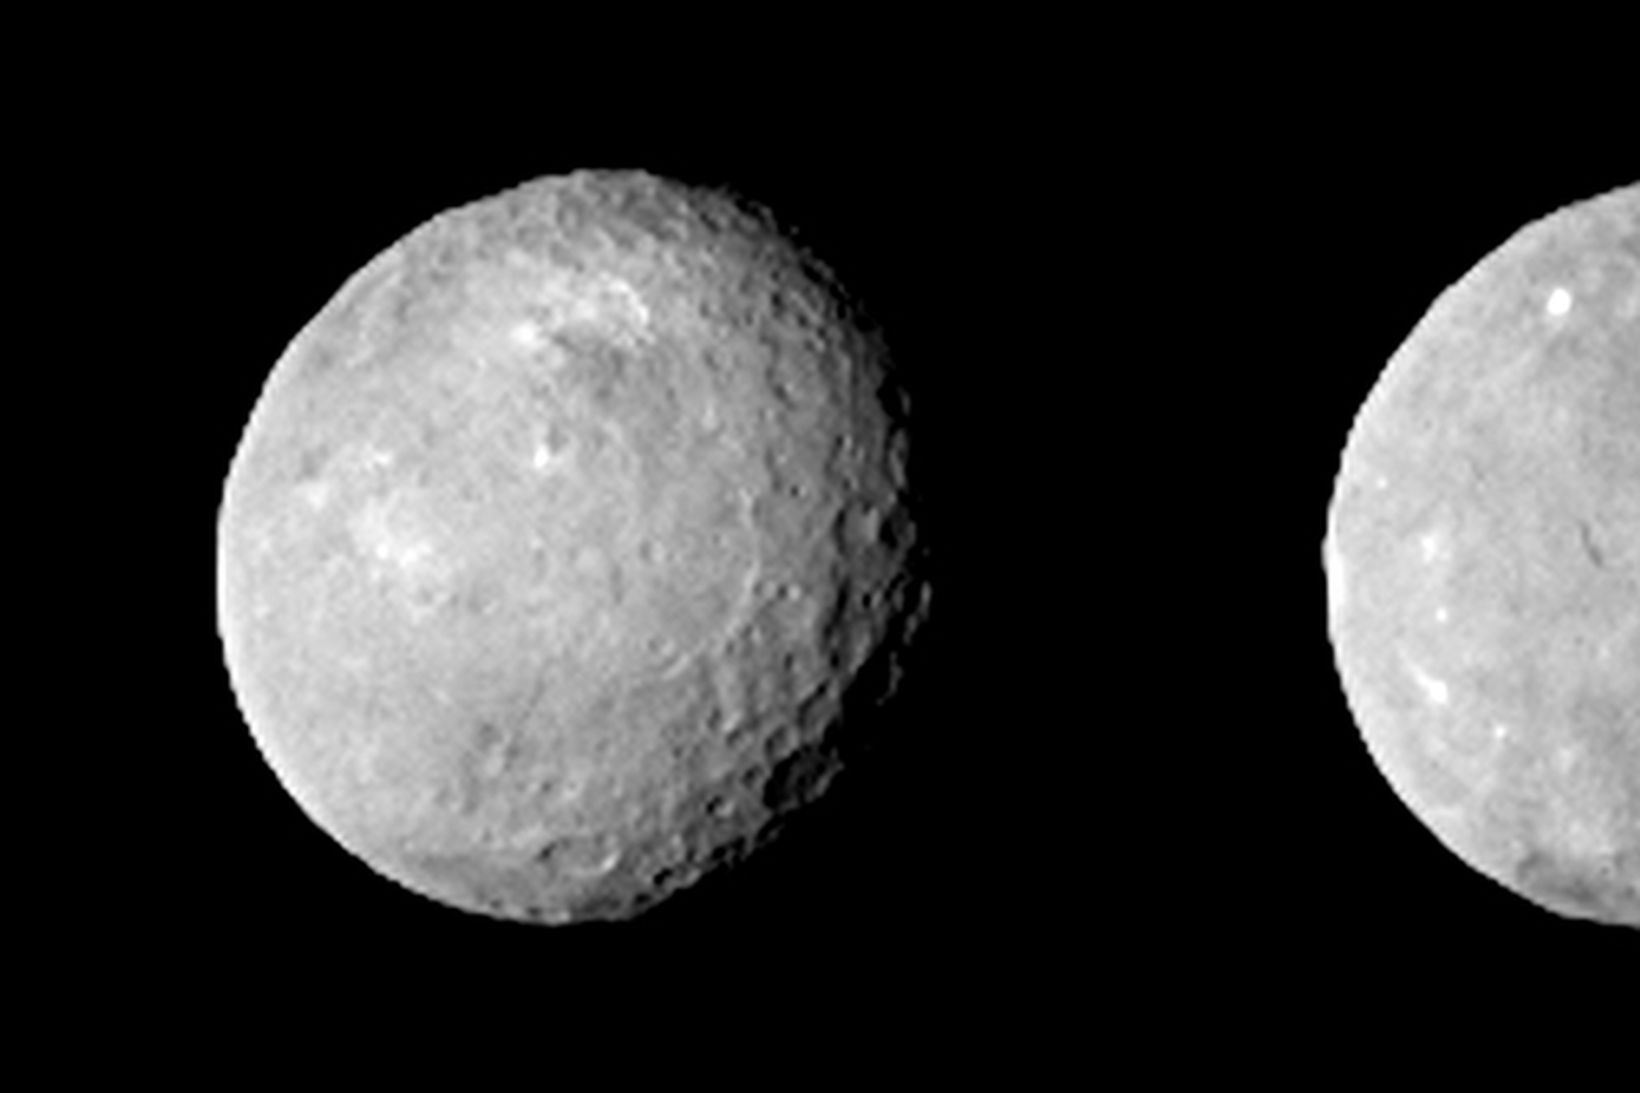 Ceres eins og dvergreikistjarnan kom fyrir sjónir Dawn 12. febrúar.